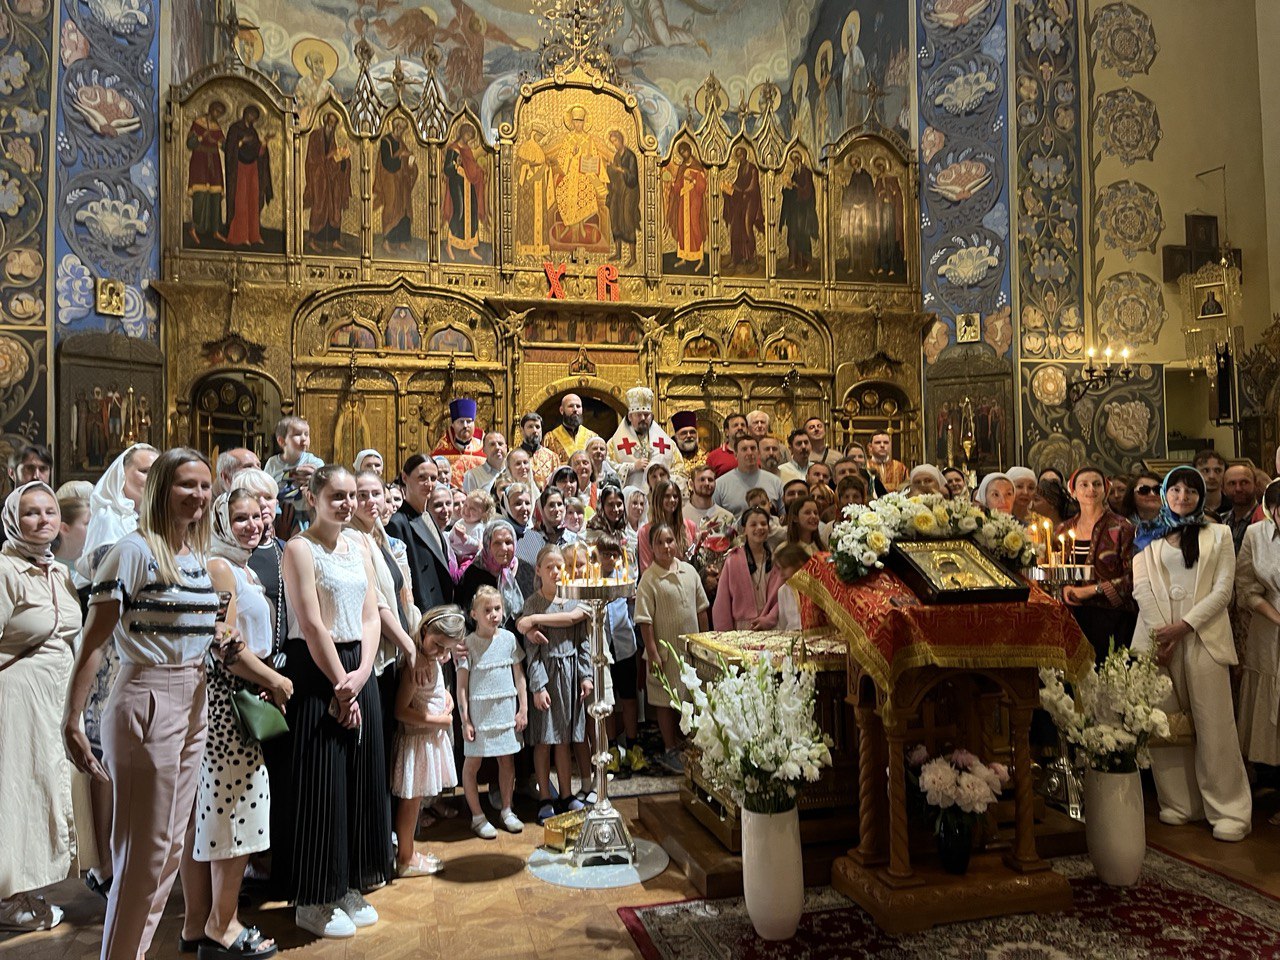 La cathédrale orthodoxe russe de Nice fête la translation des reliques de saint Nicolas